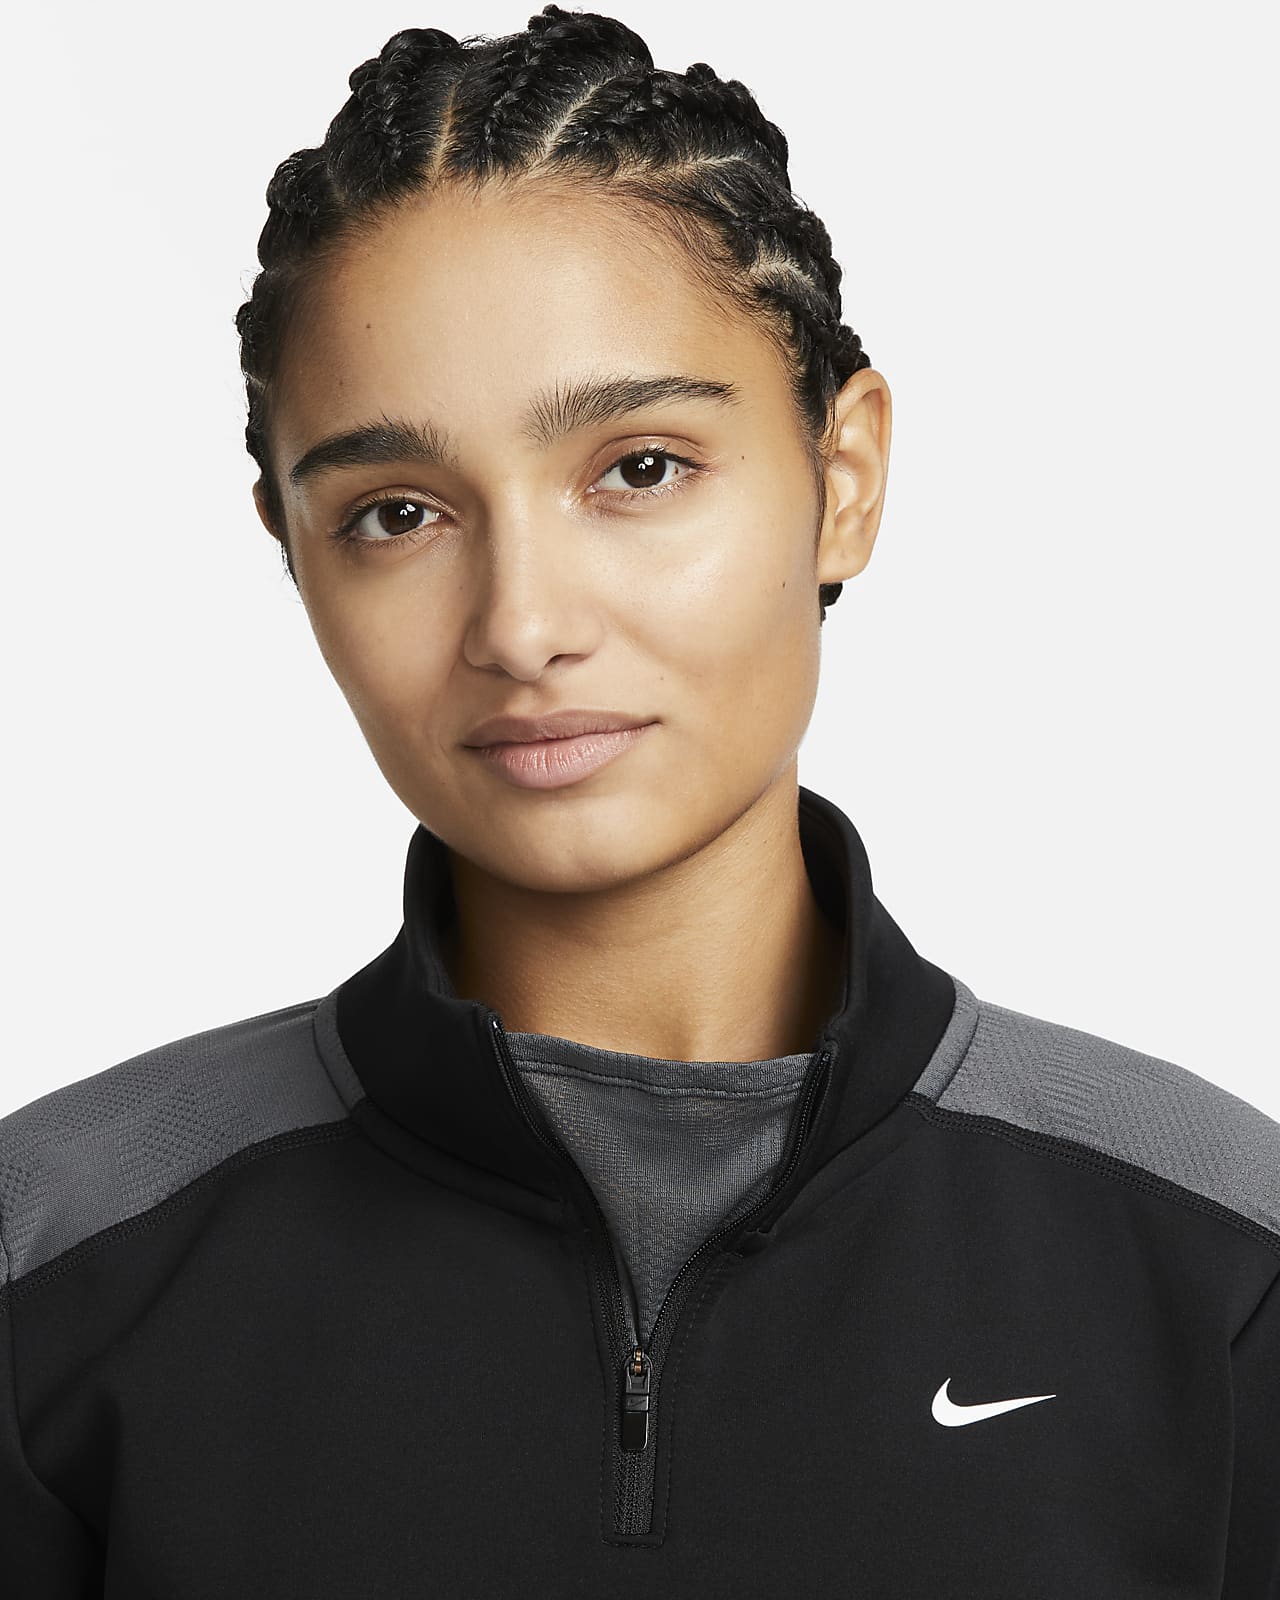 Nike Dri-FIT Women's Long-Sleeve 1/4-Zip Training Top.